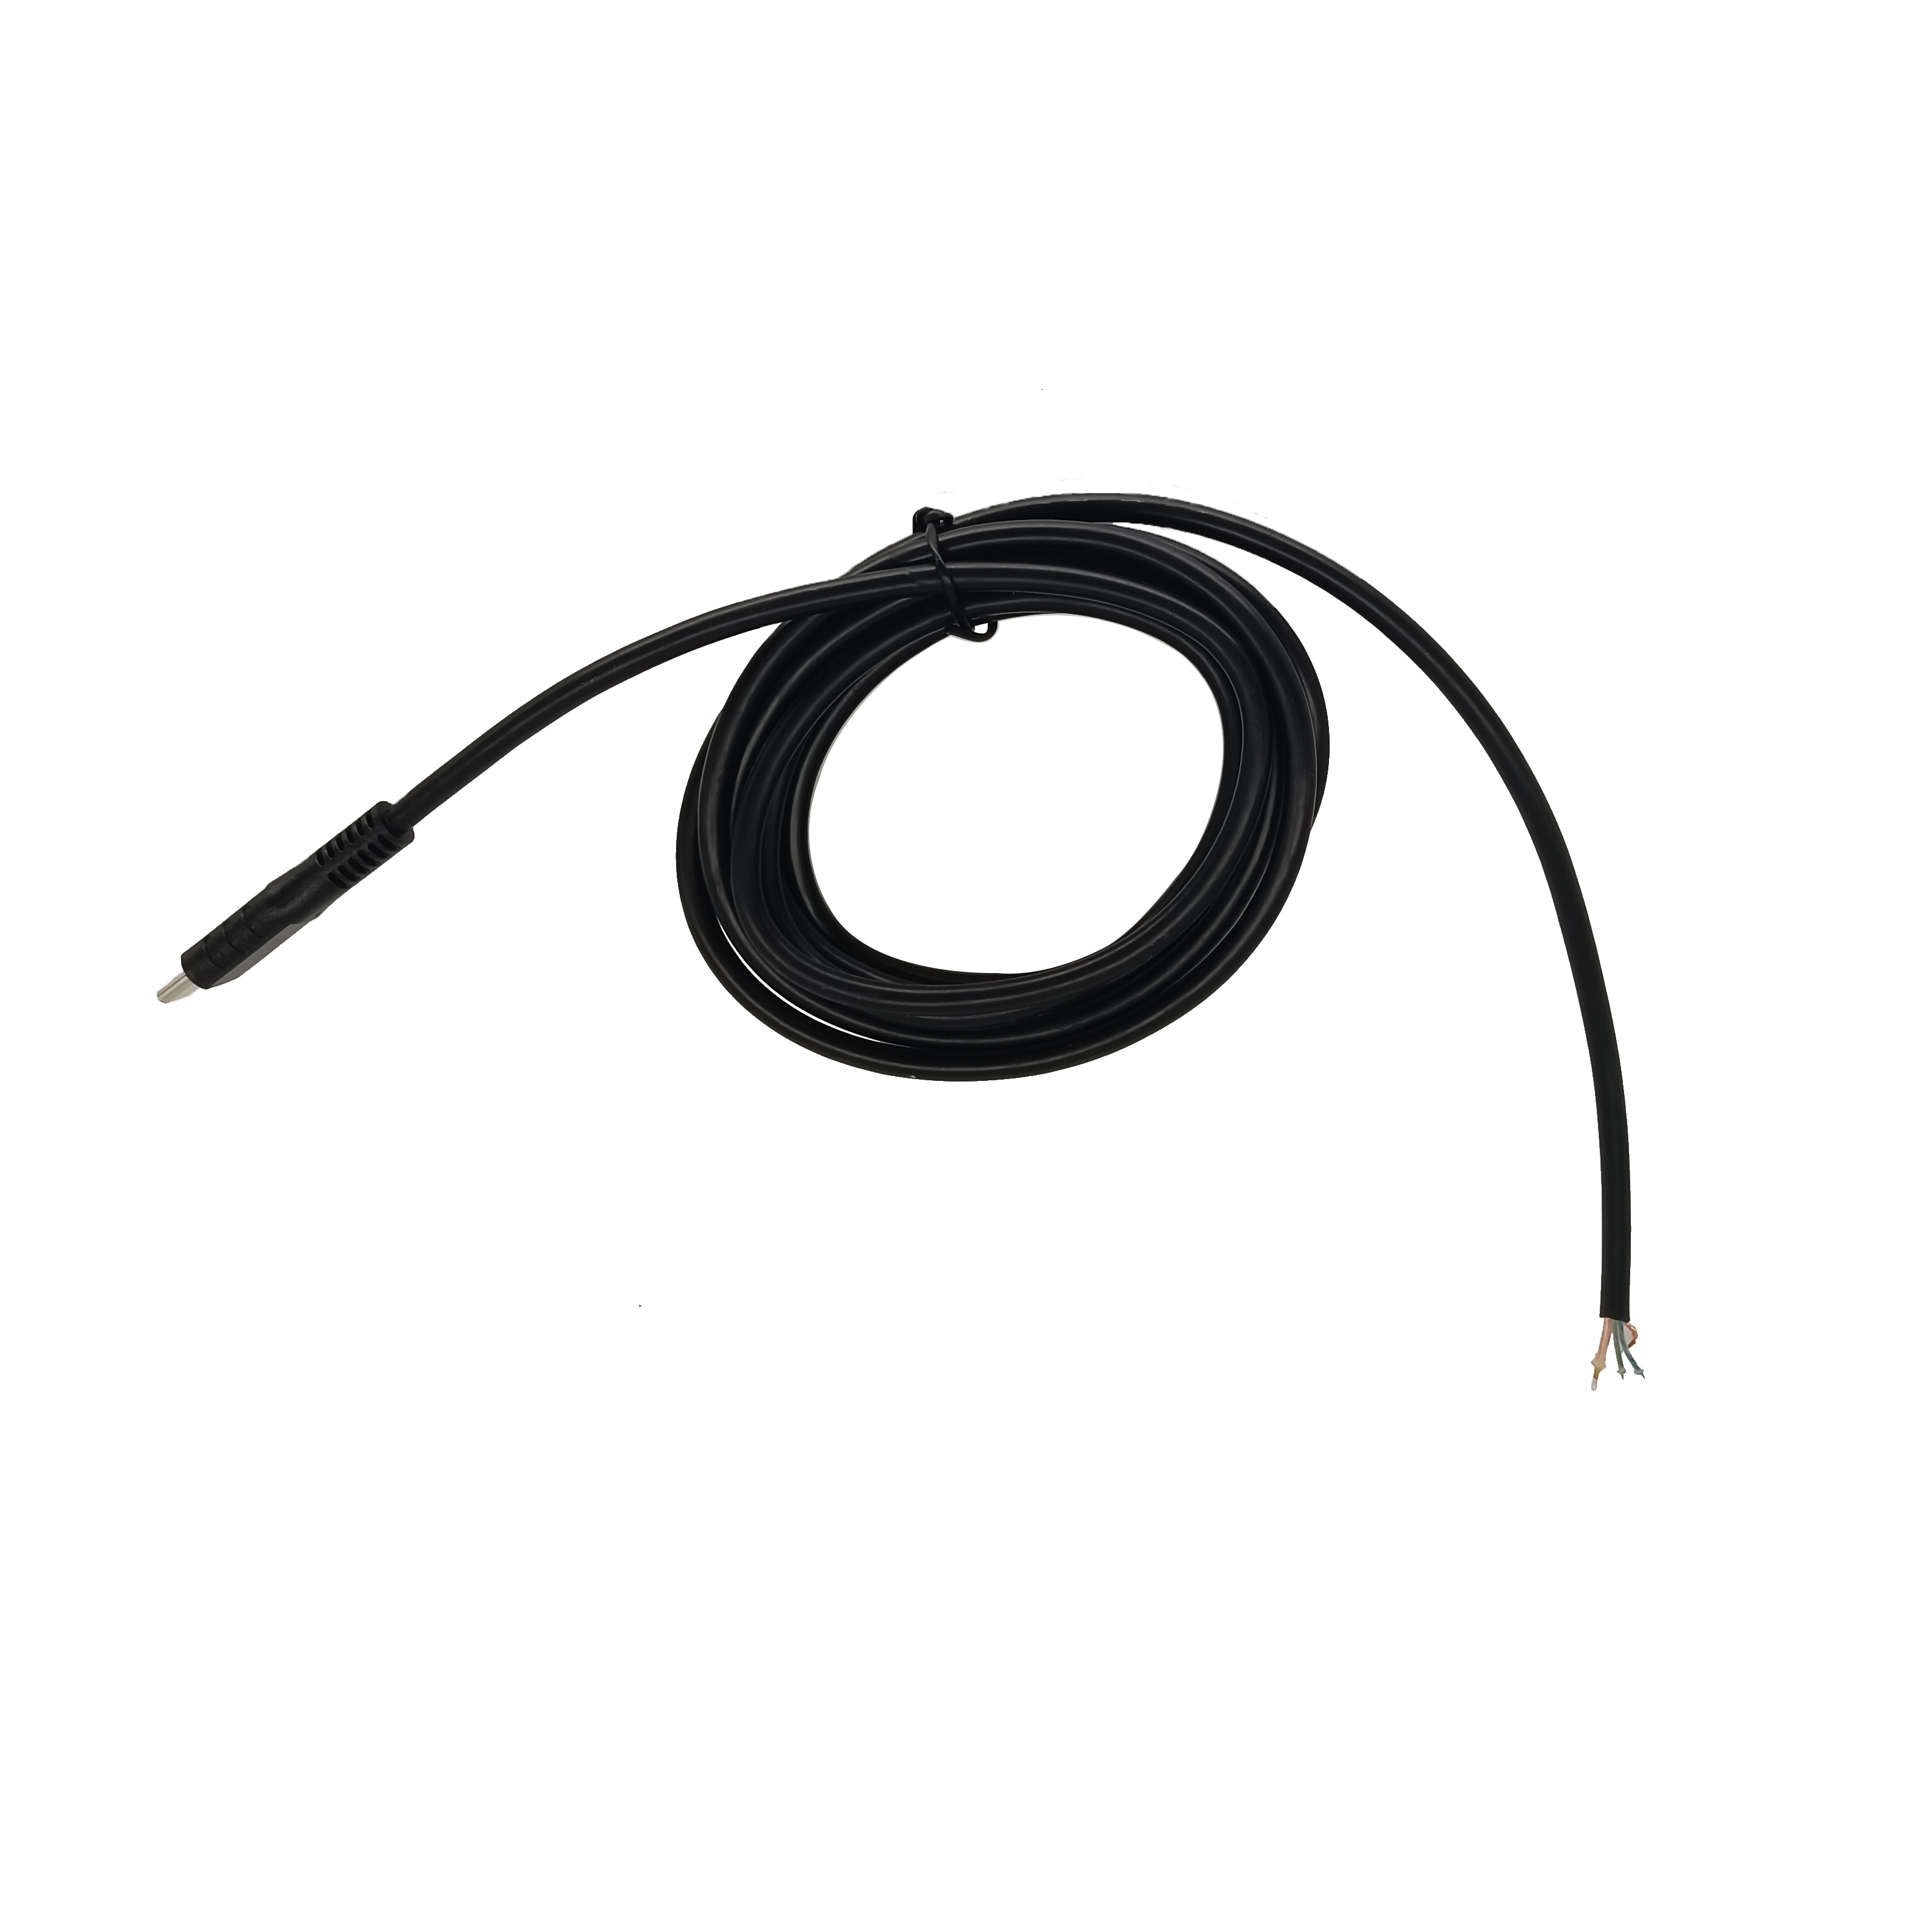 黑色PVC Type-C连接线